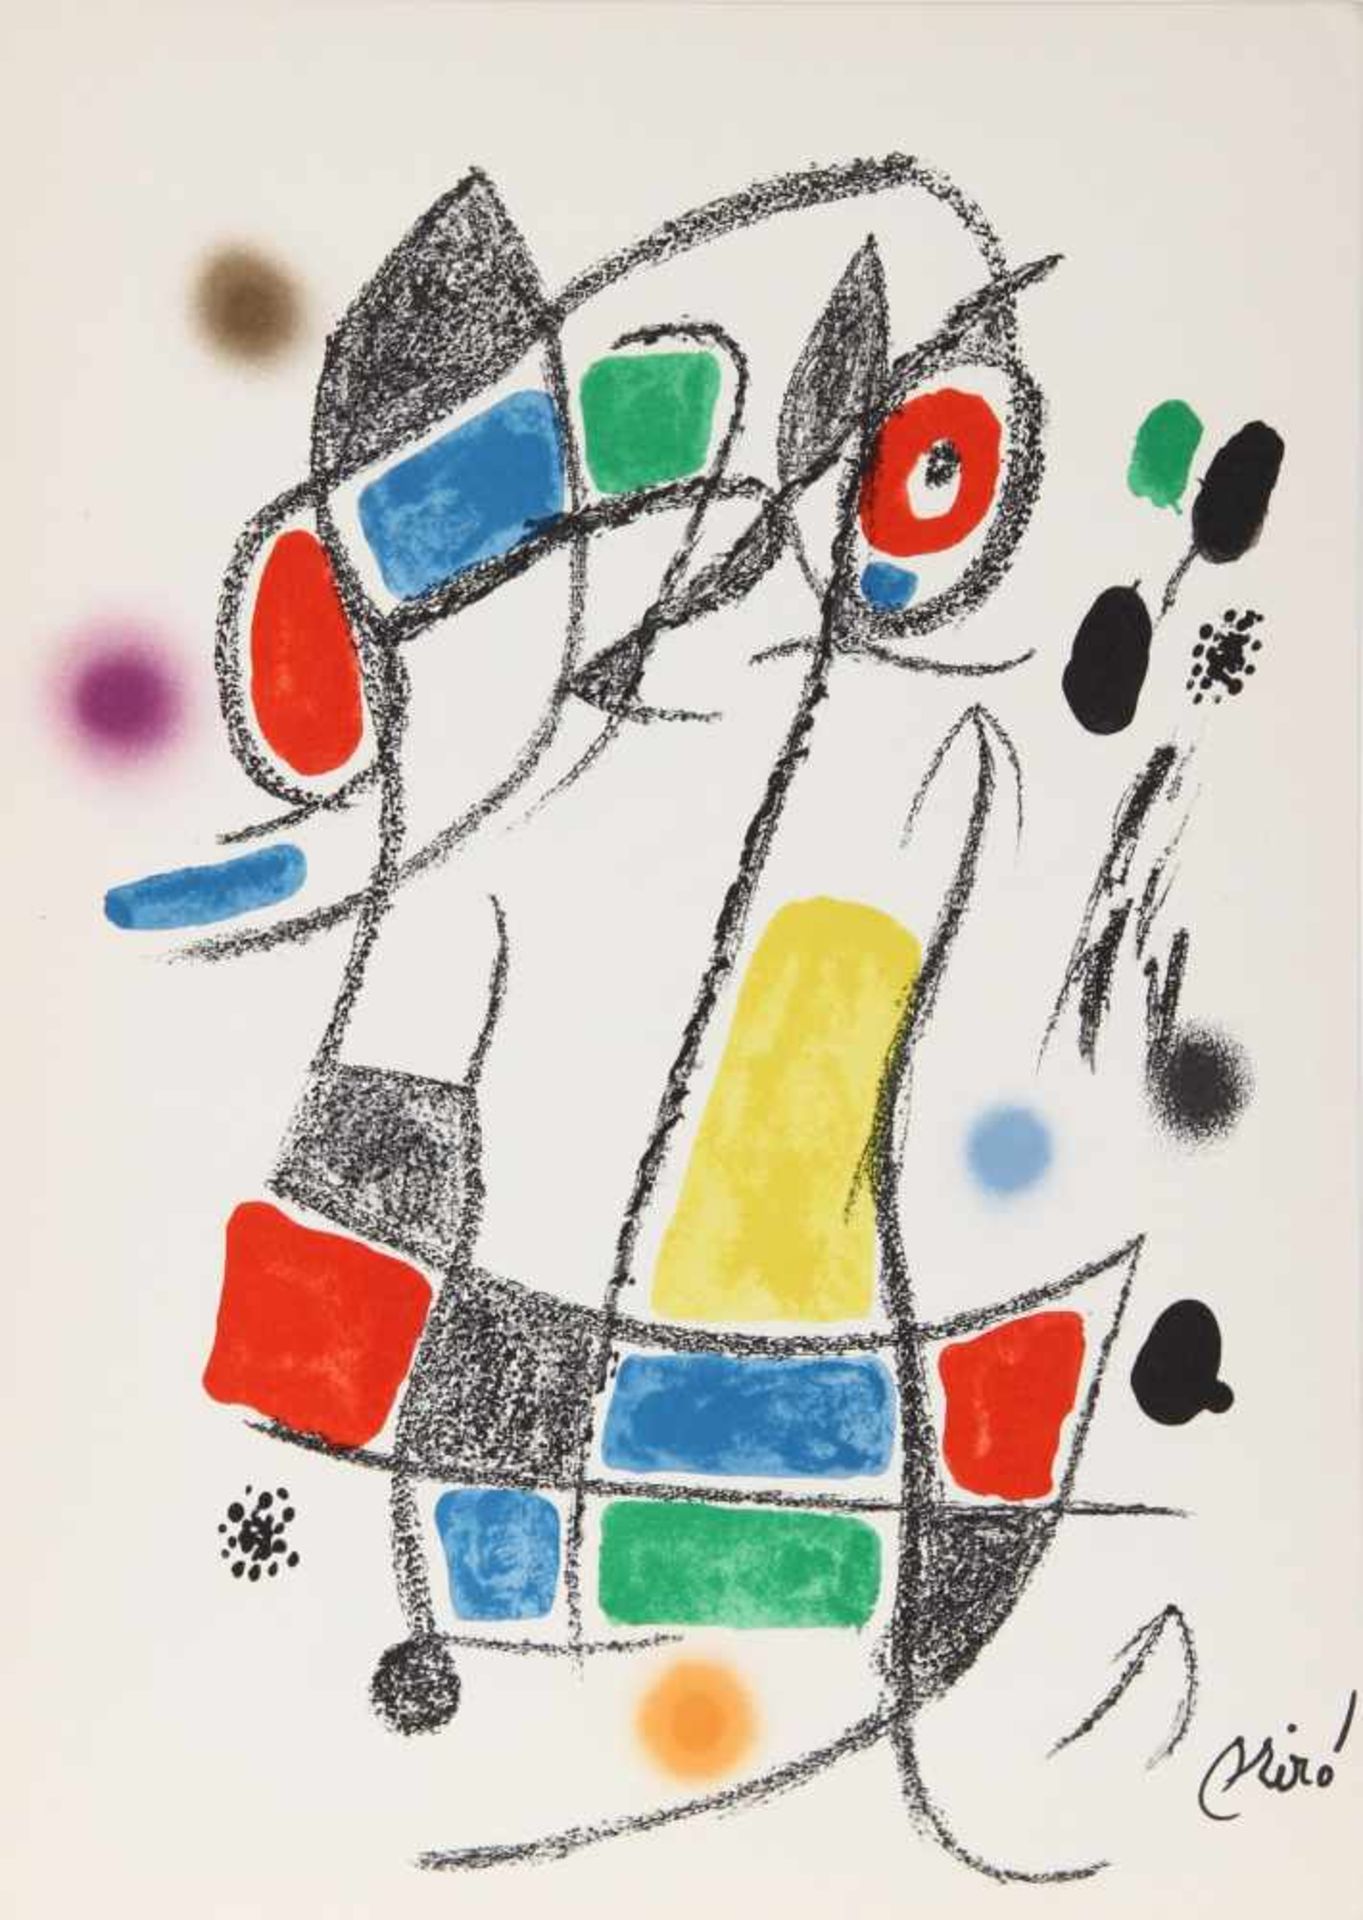 Joan Miro - Maravillas con Variaciones Acrósticas I, 1975